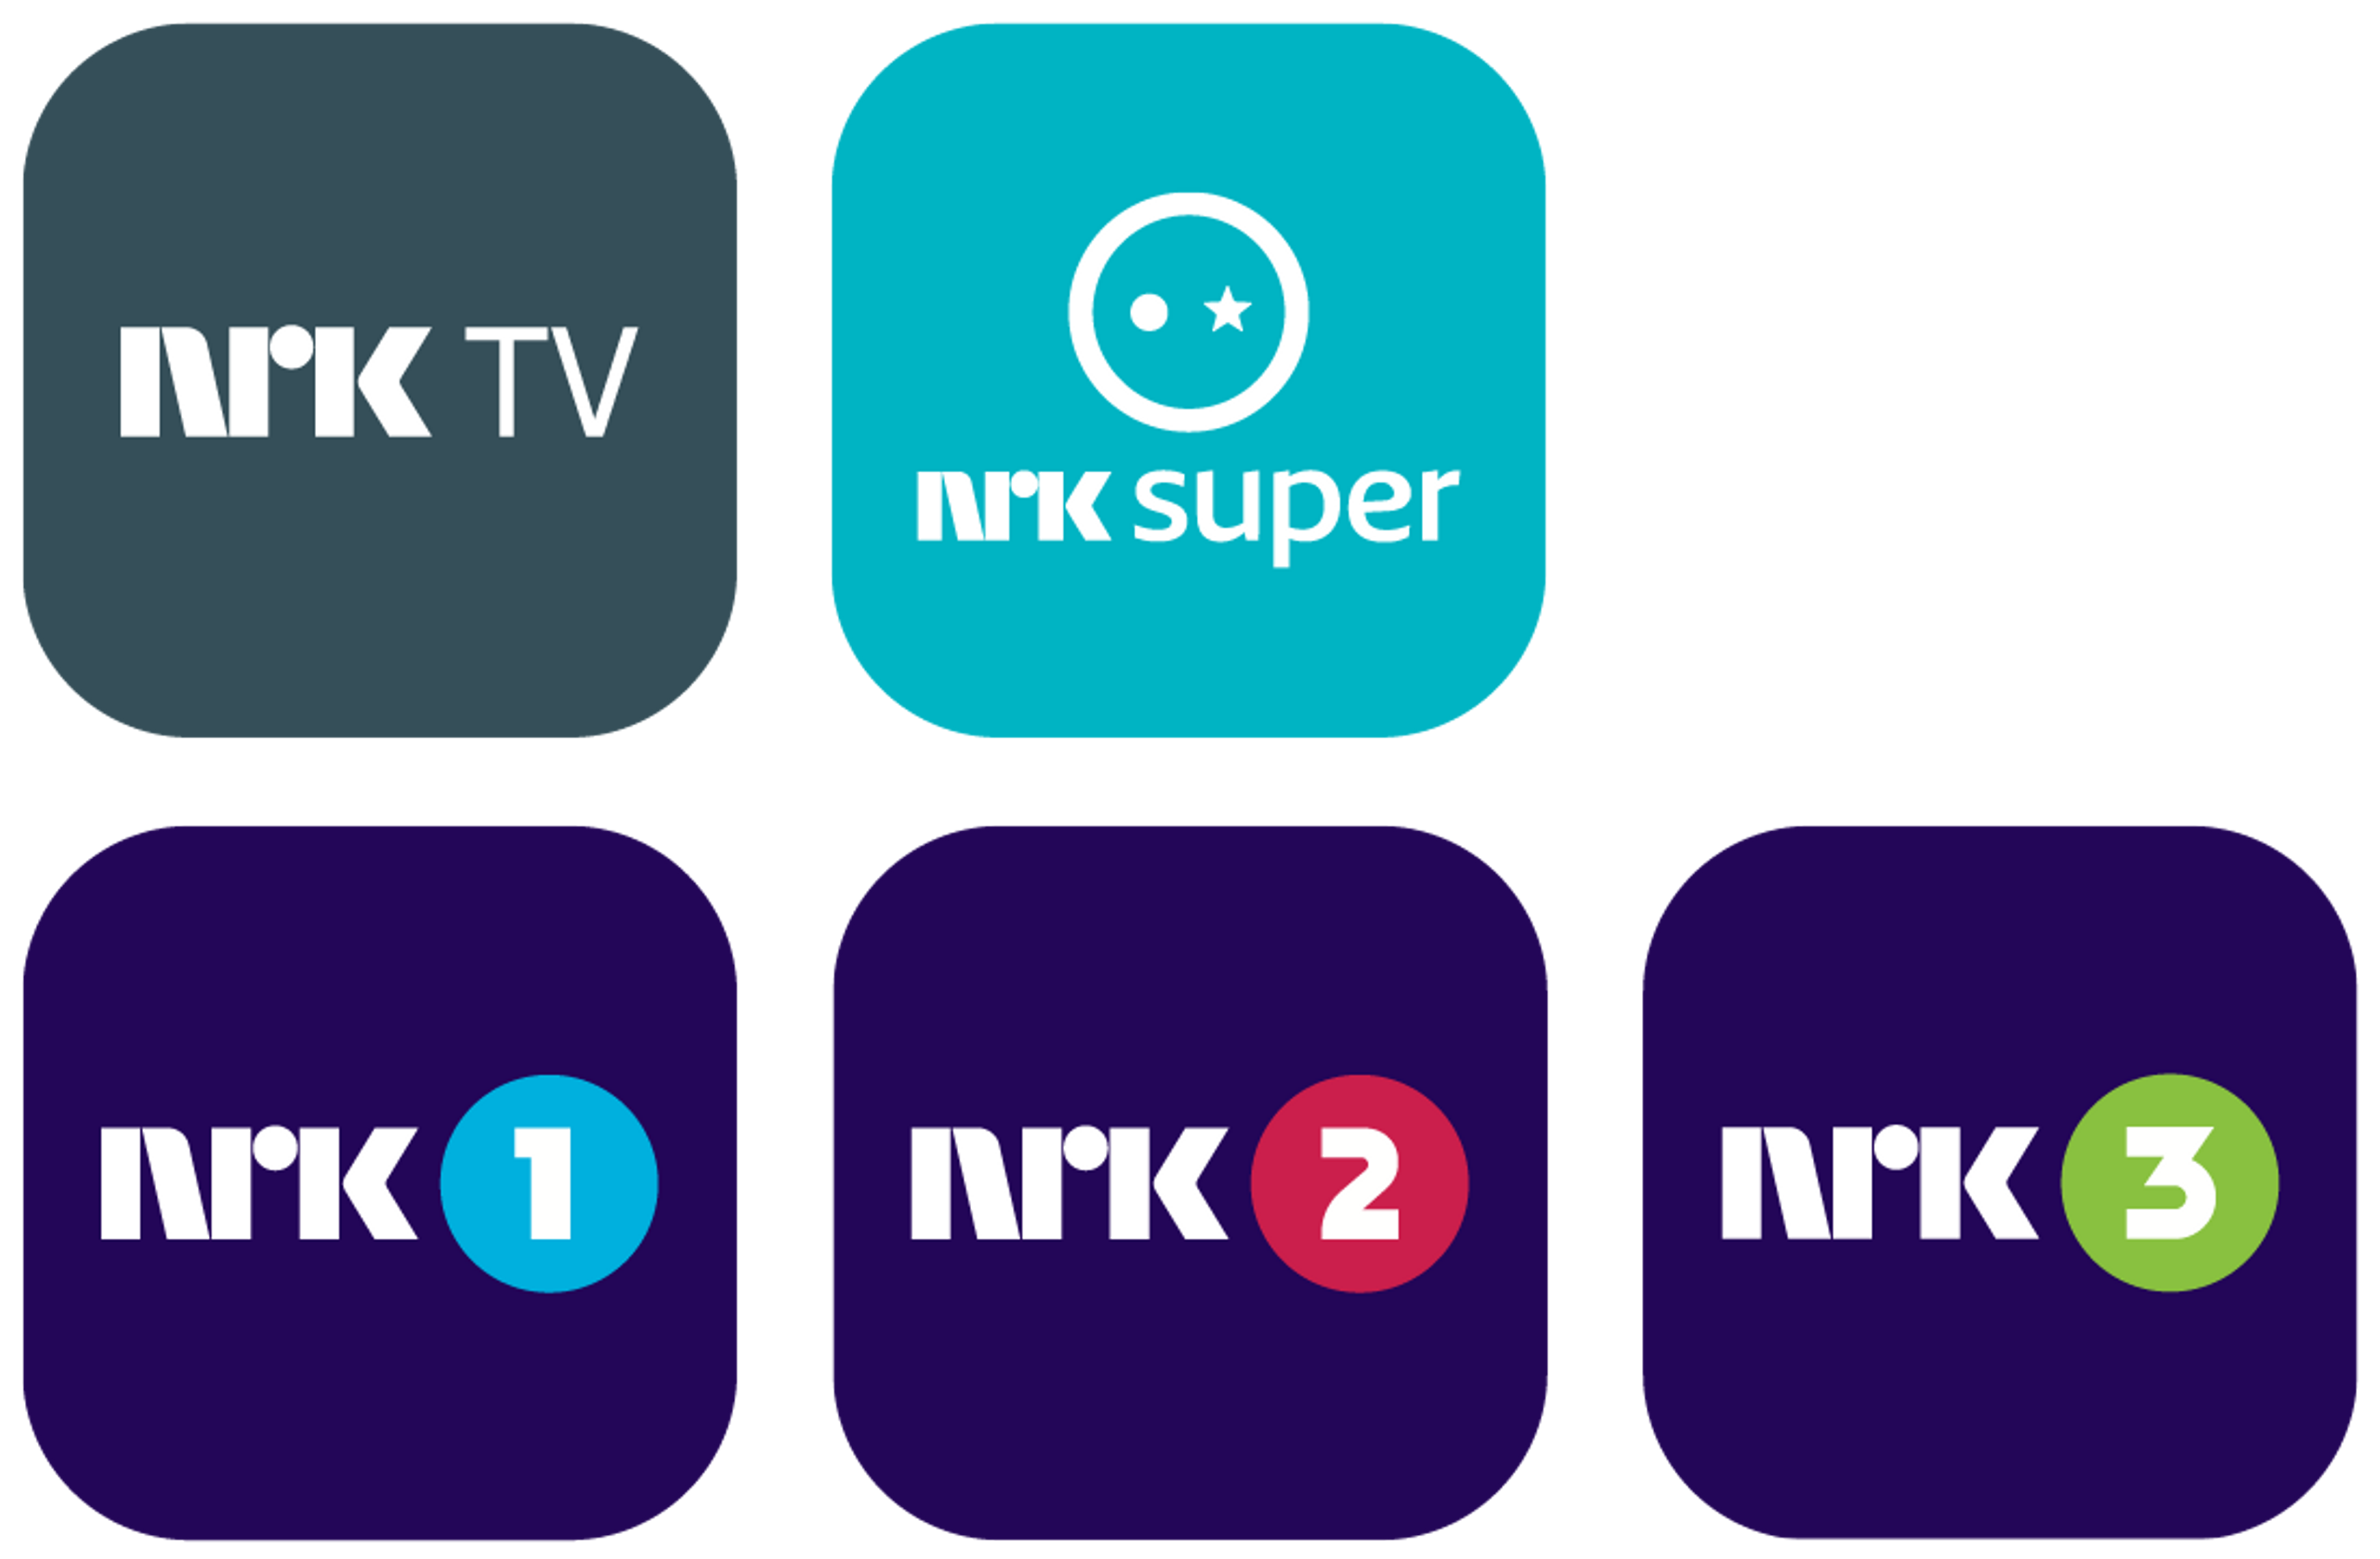 Logo for NRK TV, NRK Supert, NRK 1, NRK 2, NRK 3.